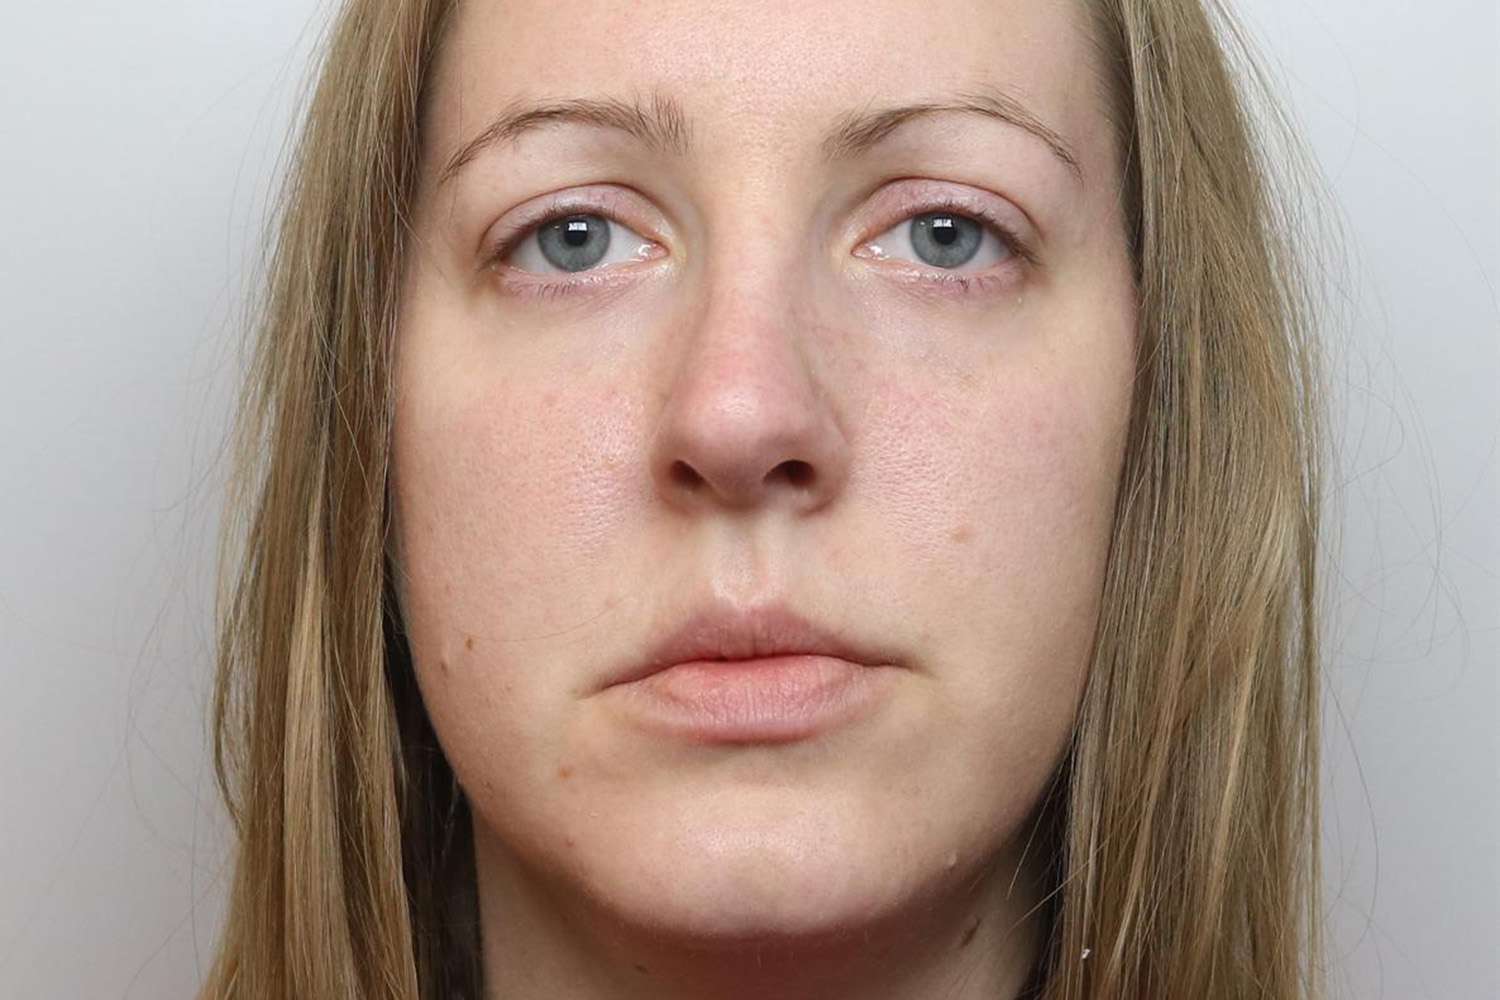 L'infirmière Lucy Letby reconnue coupable du meurtre de 7 nourrissons dans un hôpital britannique